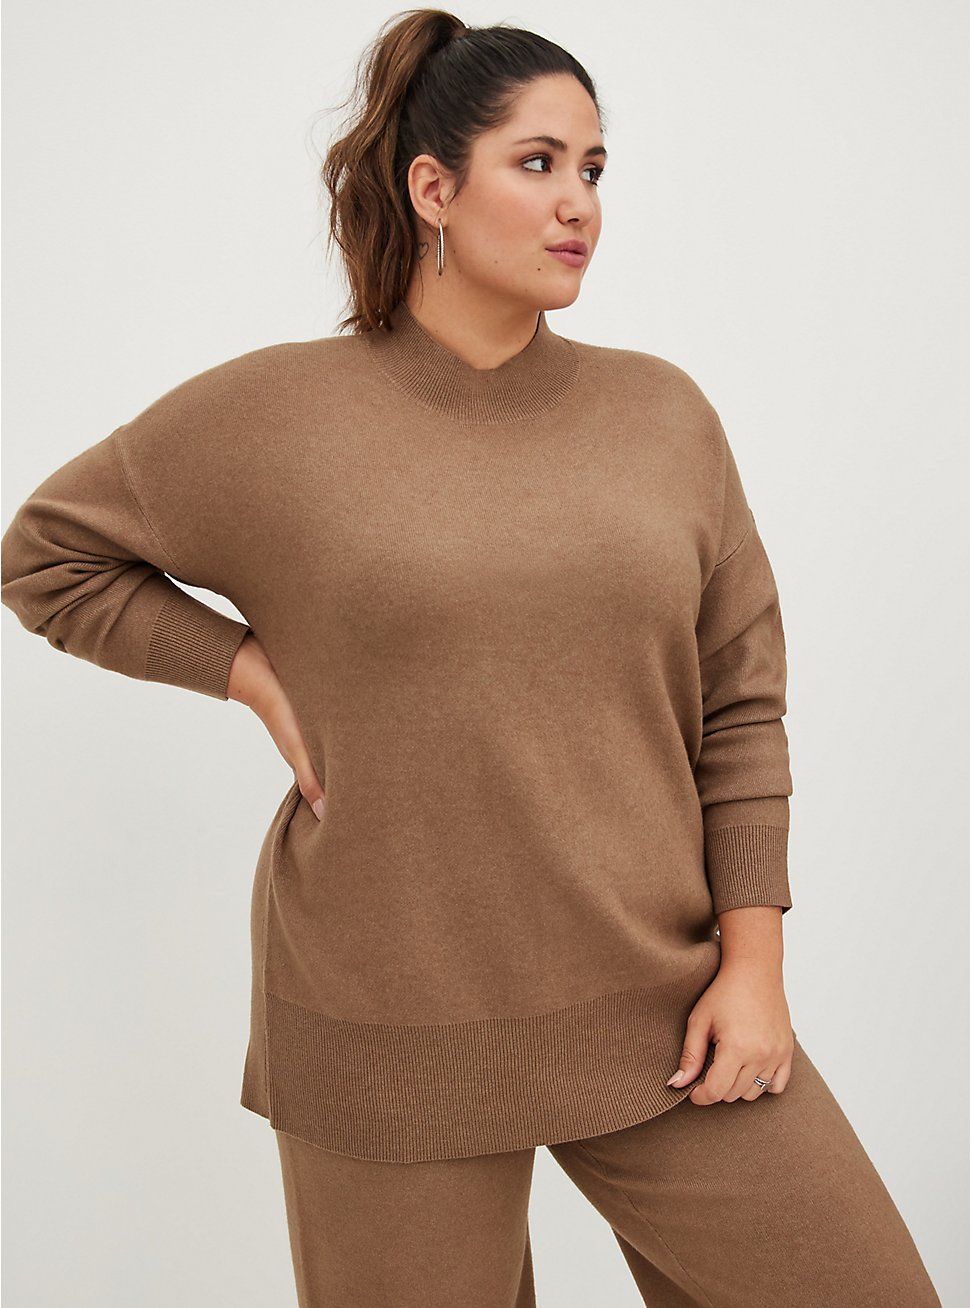 Plus Size Drop Shoulder Sweater - Luxe Cozy Brown , TAN/BEIGE, hi-res